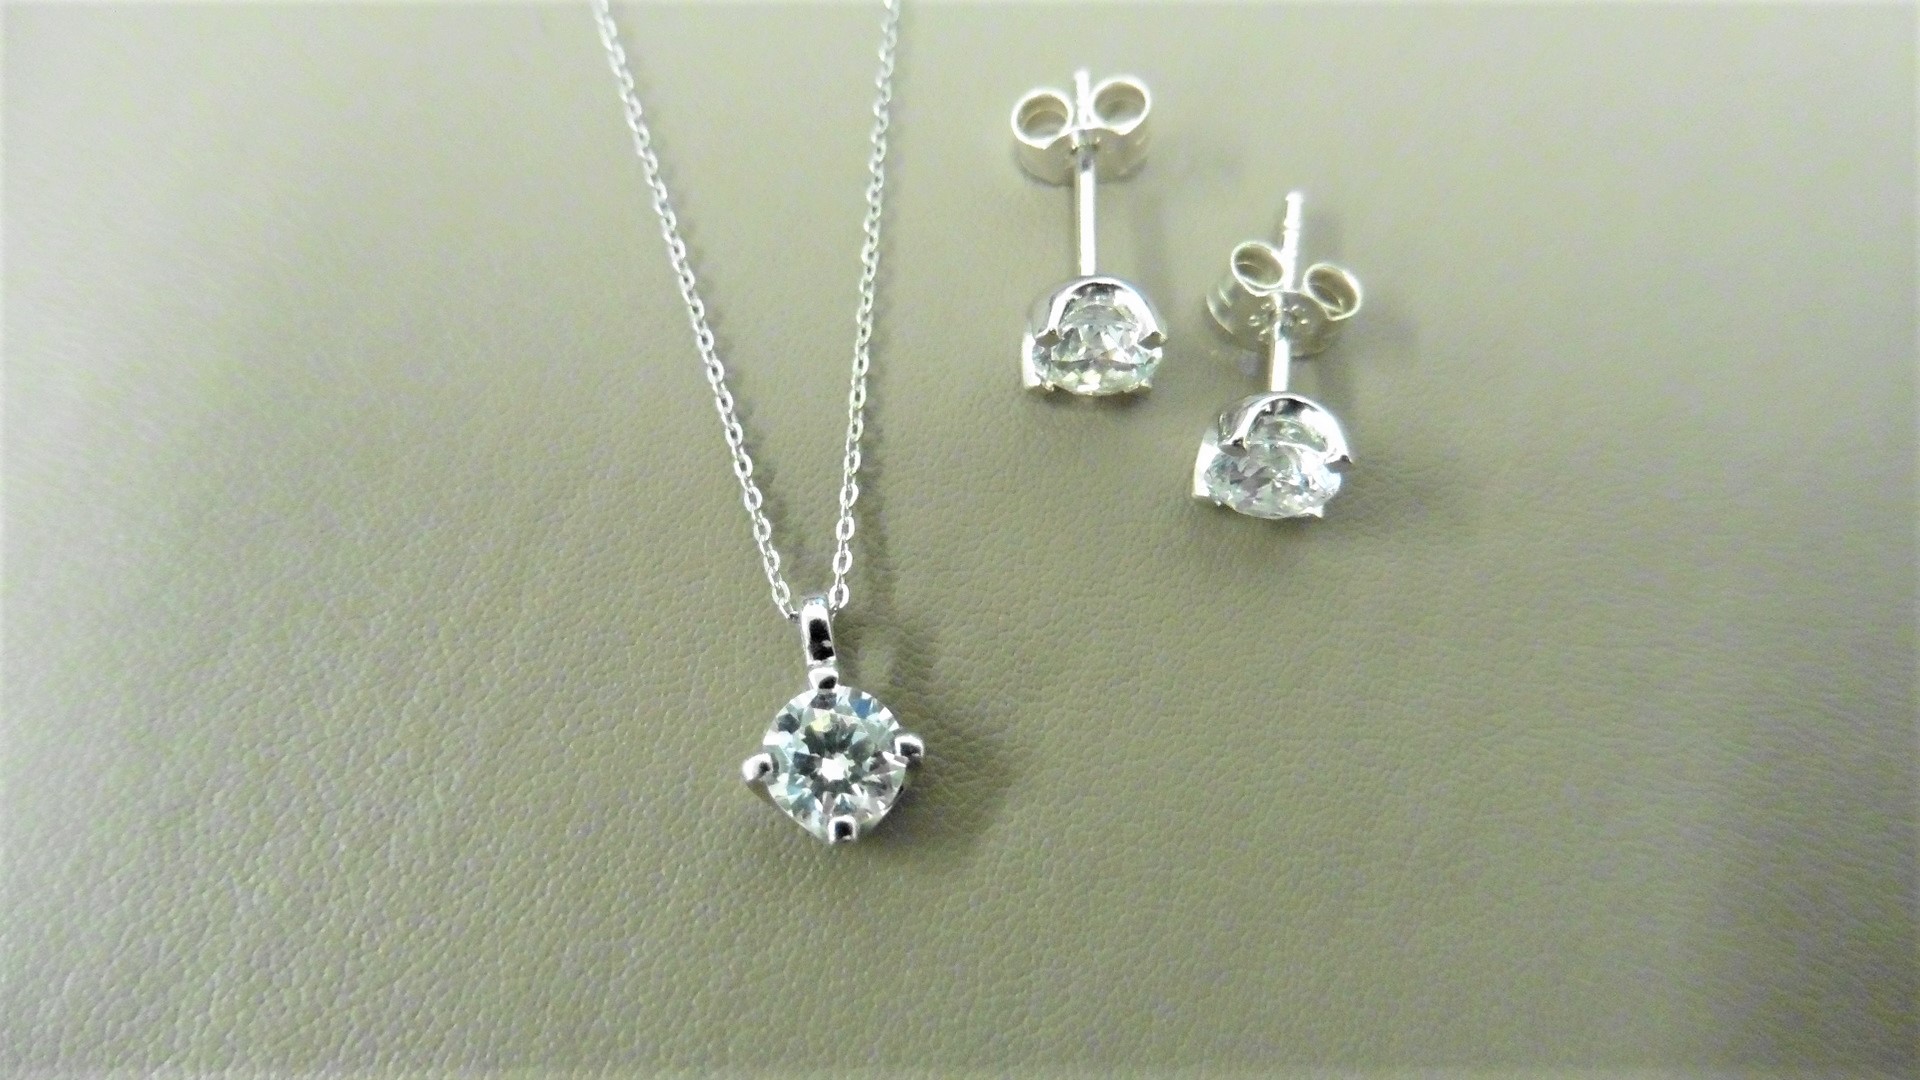 0.25ct / 0.50ct diamond pendant and earring set in platinum. Pendant - 0.25ct brilliant cut diamond,